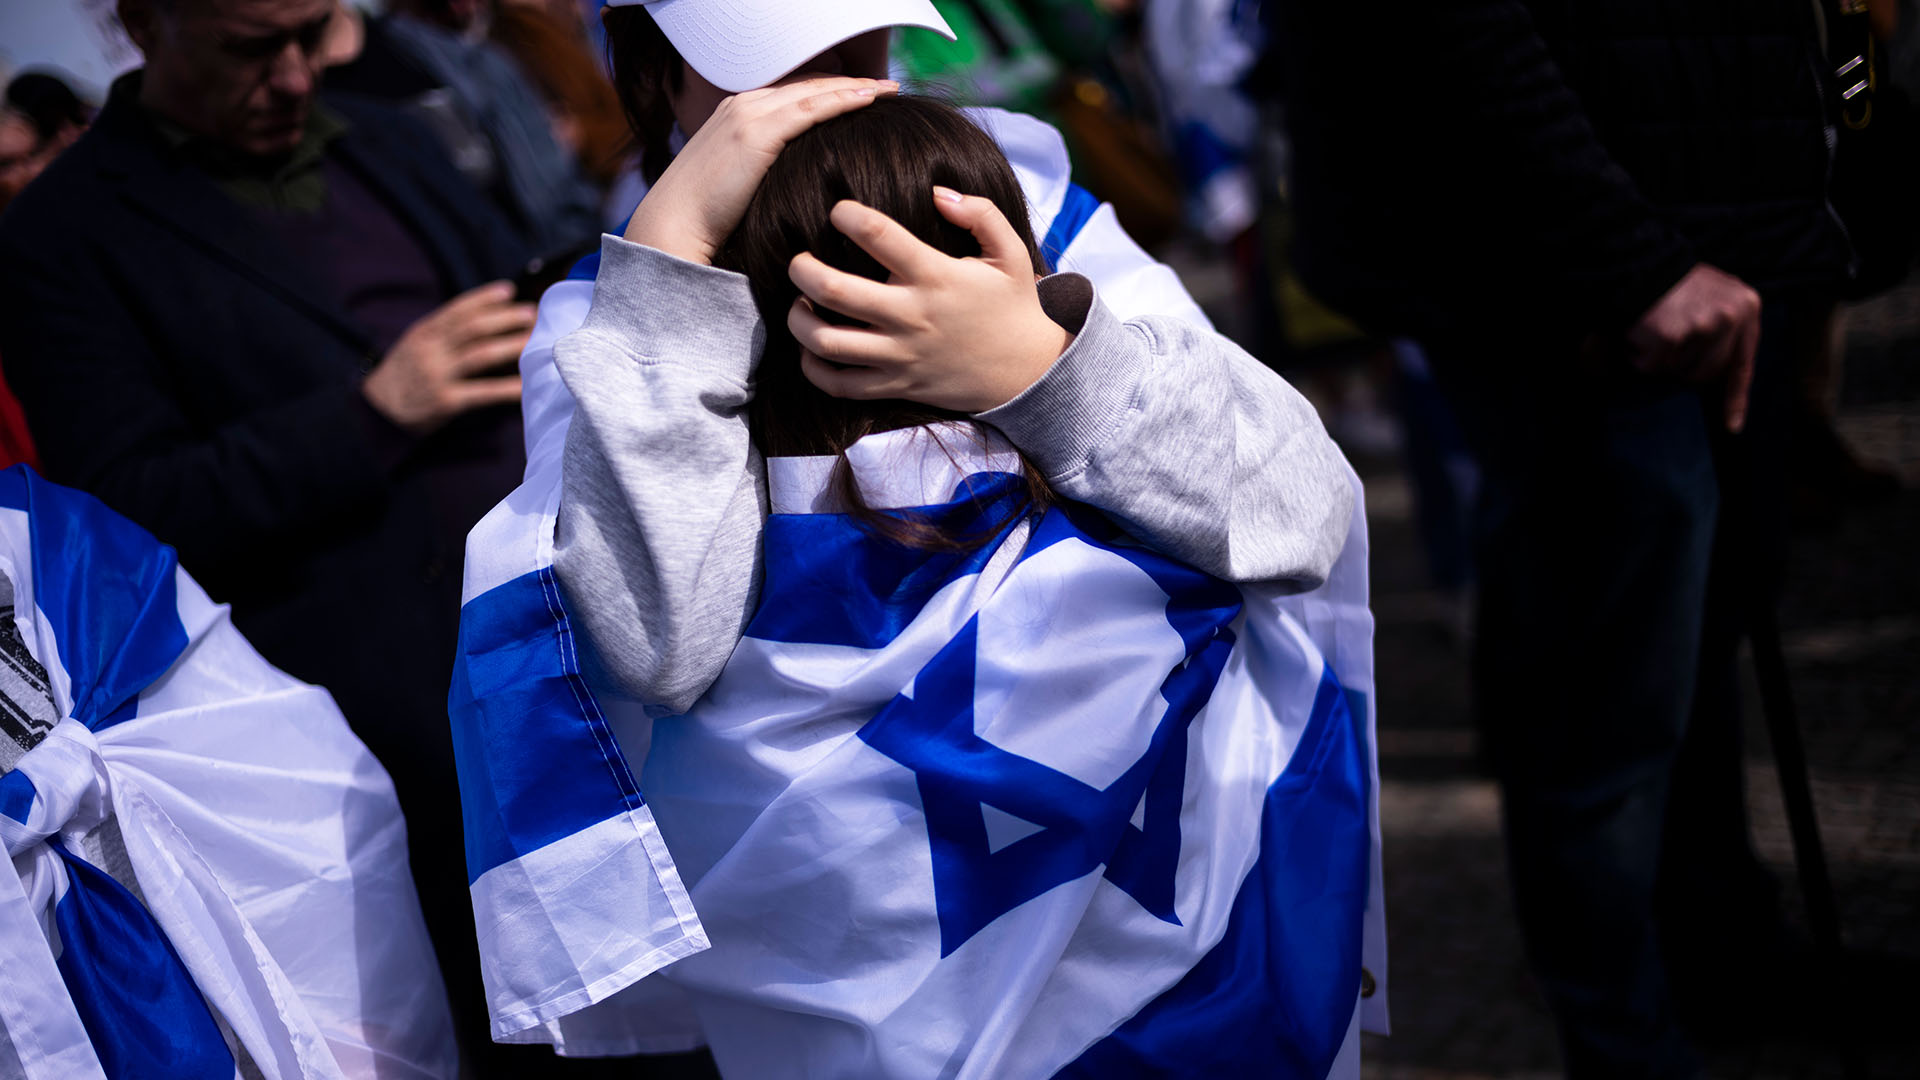 Eine Frau umarmt ein Kind mit einer israelischen Flagge während einer Solidaritäts-Demonstration mit Israel am Brandenburger Tor in Berlin. (Quelle: dpa/AP/Markus Schreiber)